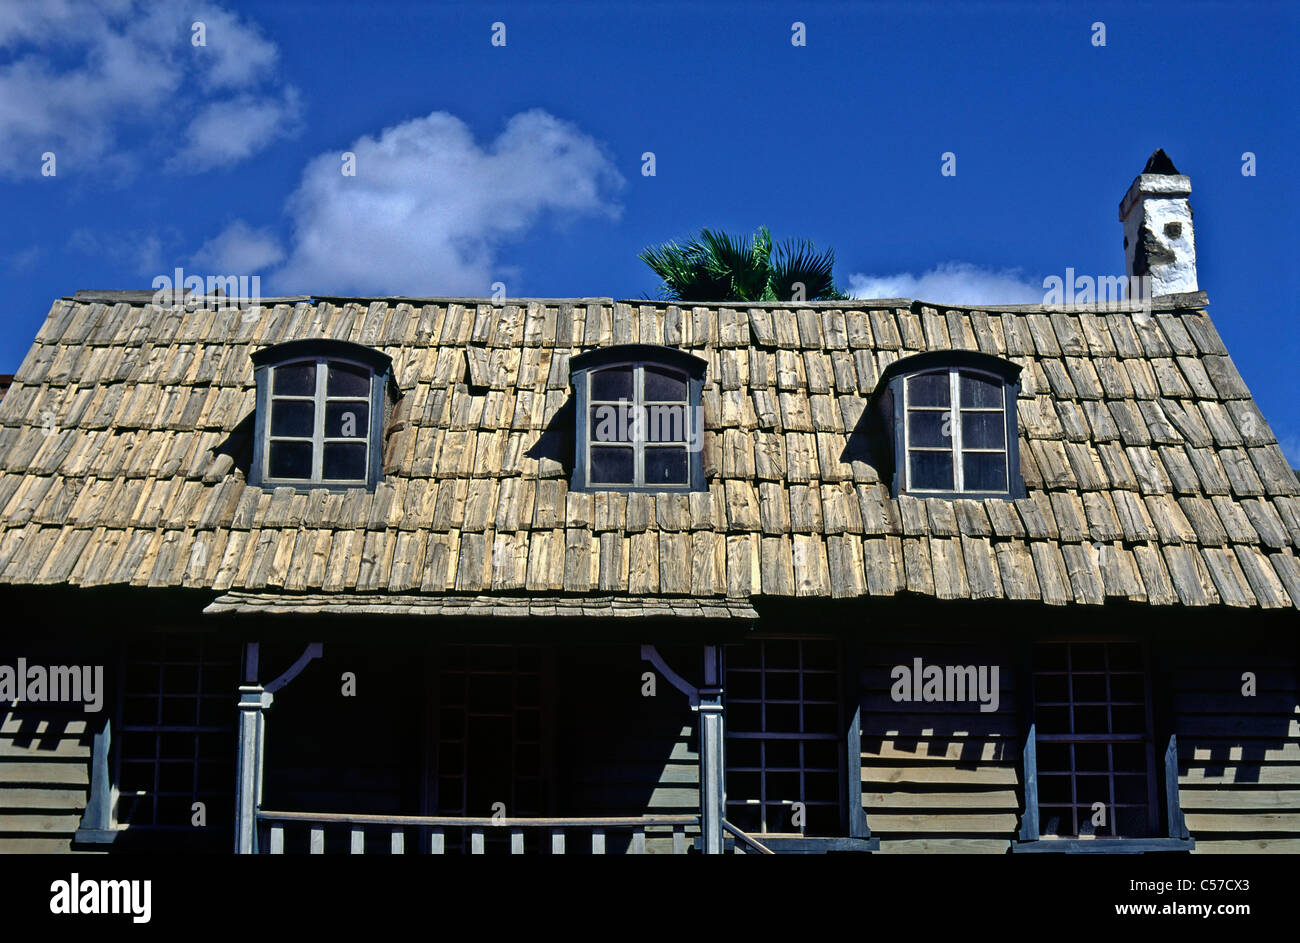 USA, Old West. Dettaglio del tetto di una casa occidentale in legno. Foto Stock